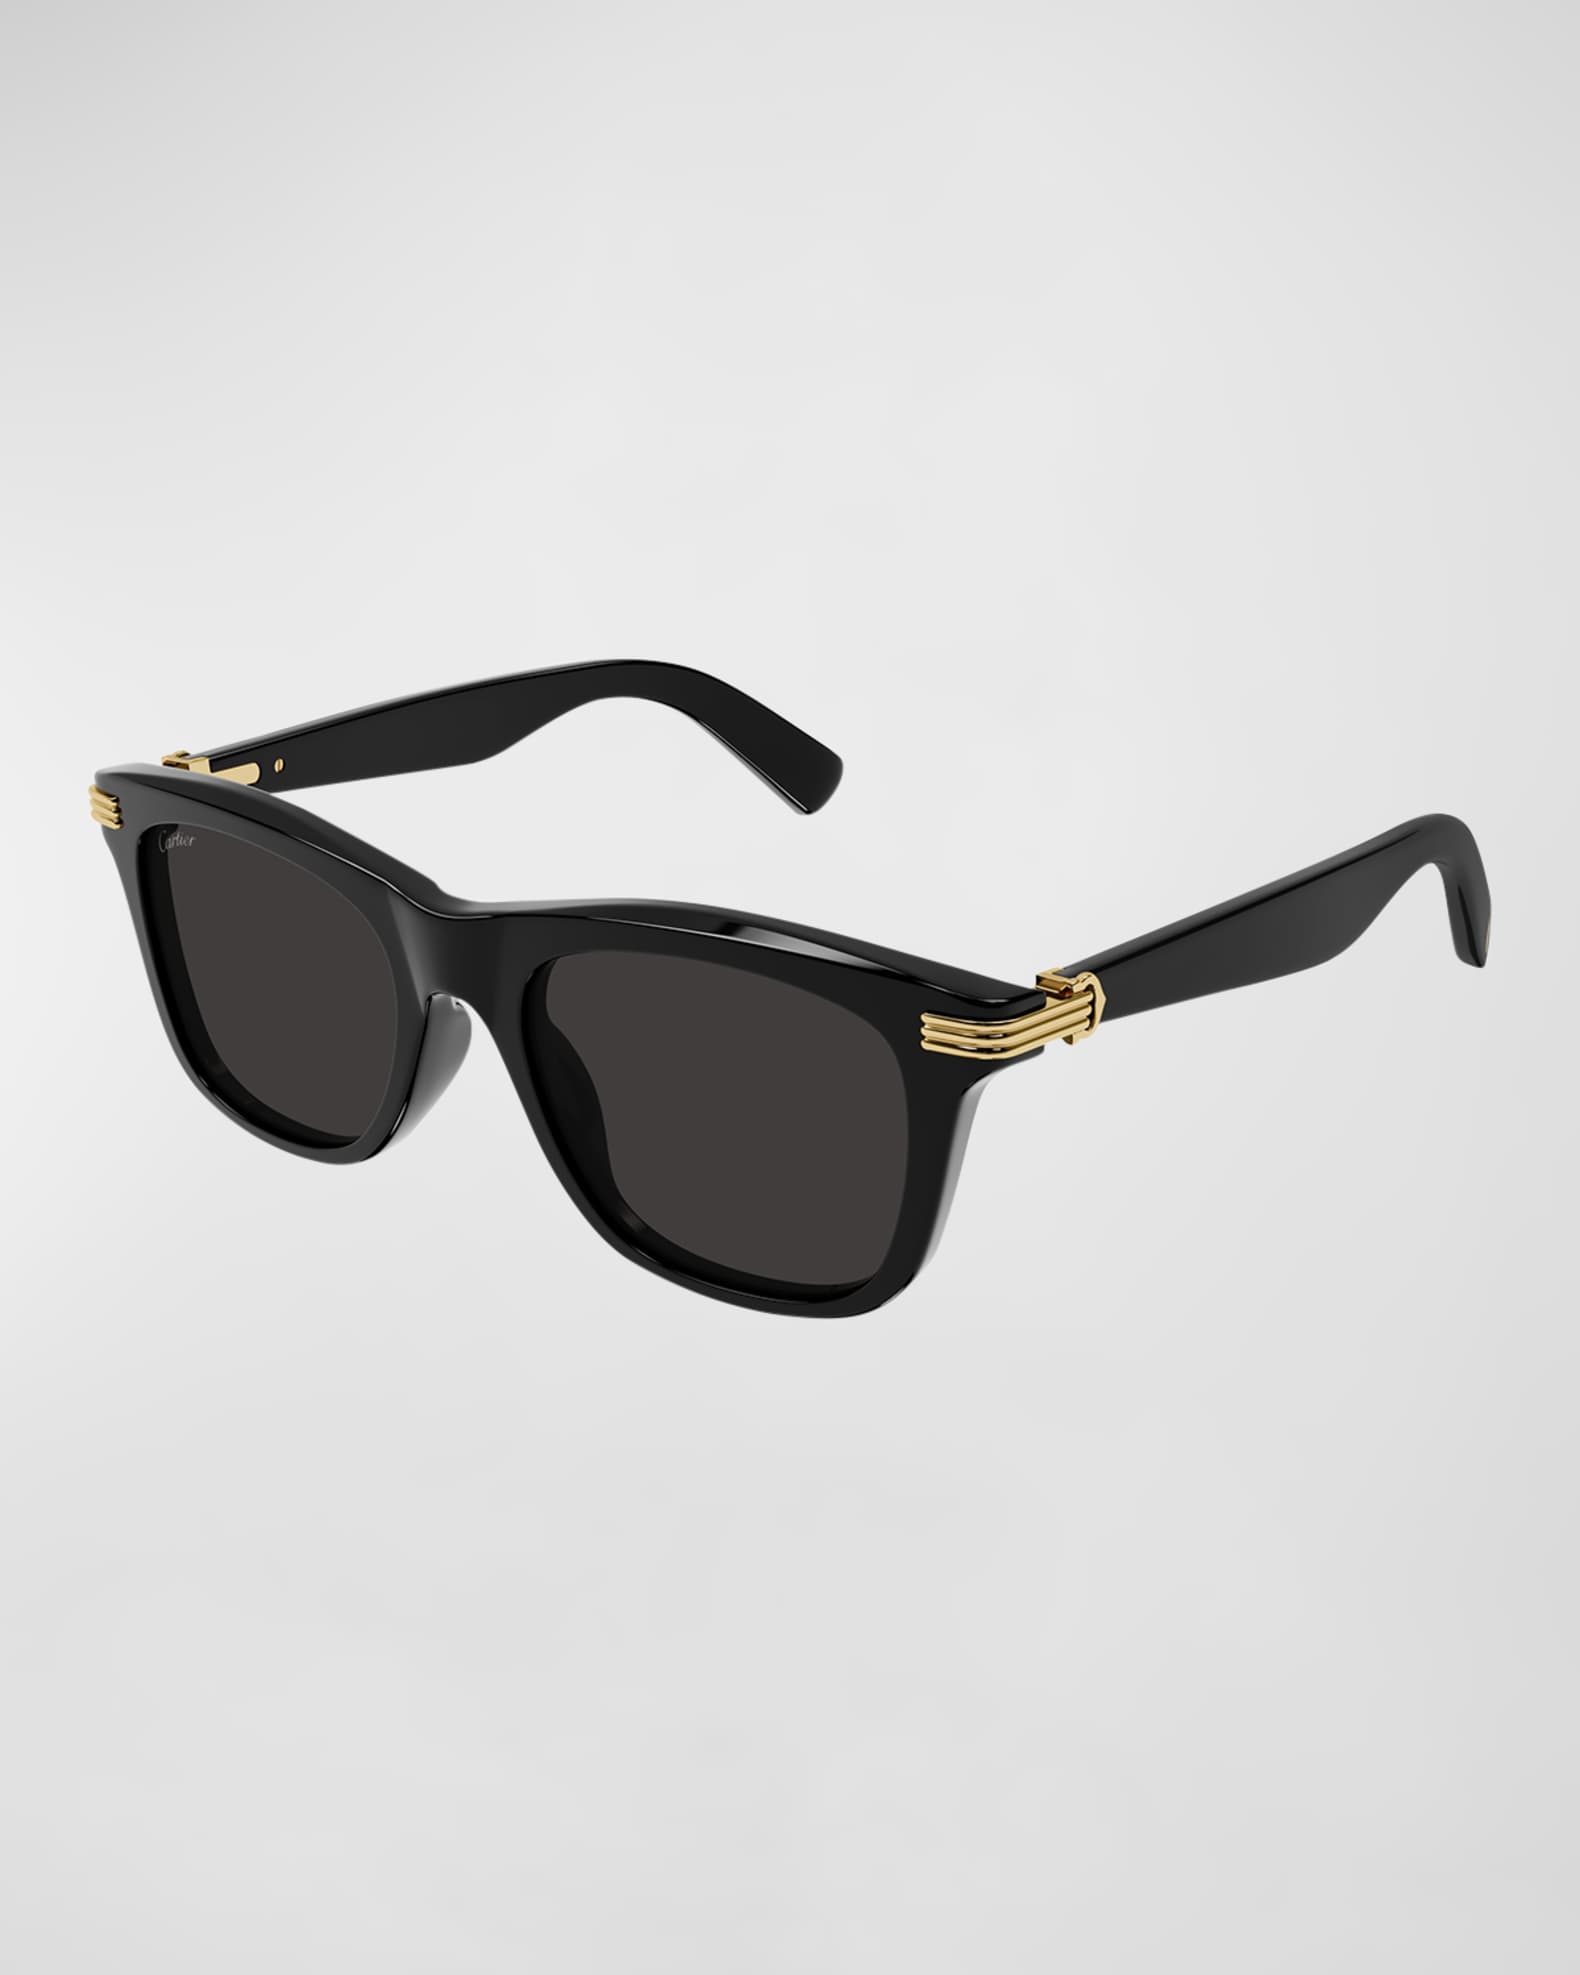 Cartier Men's Saddle Bridge Square Sunglasses | Neiman Marcus